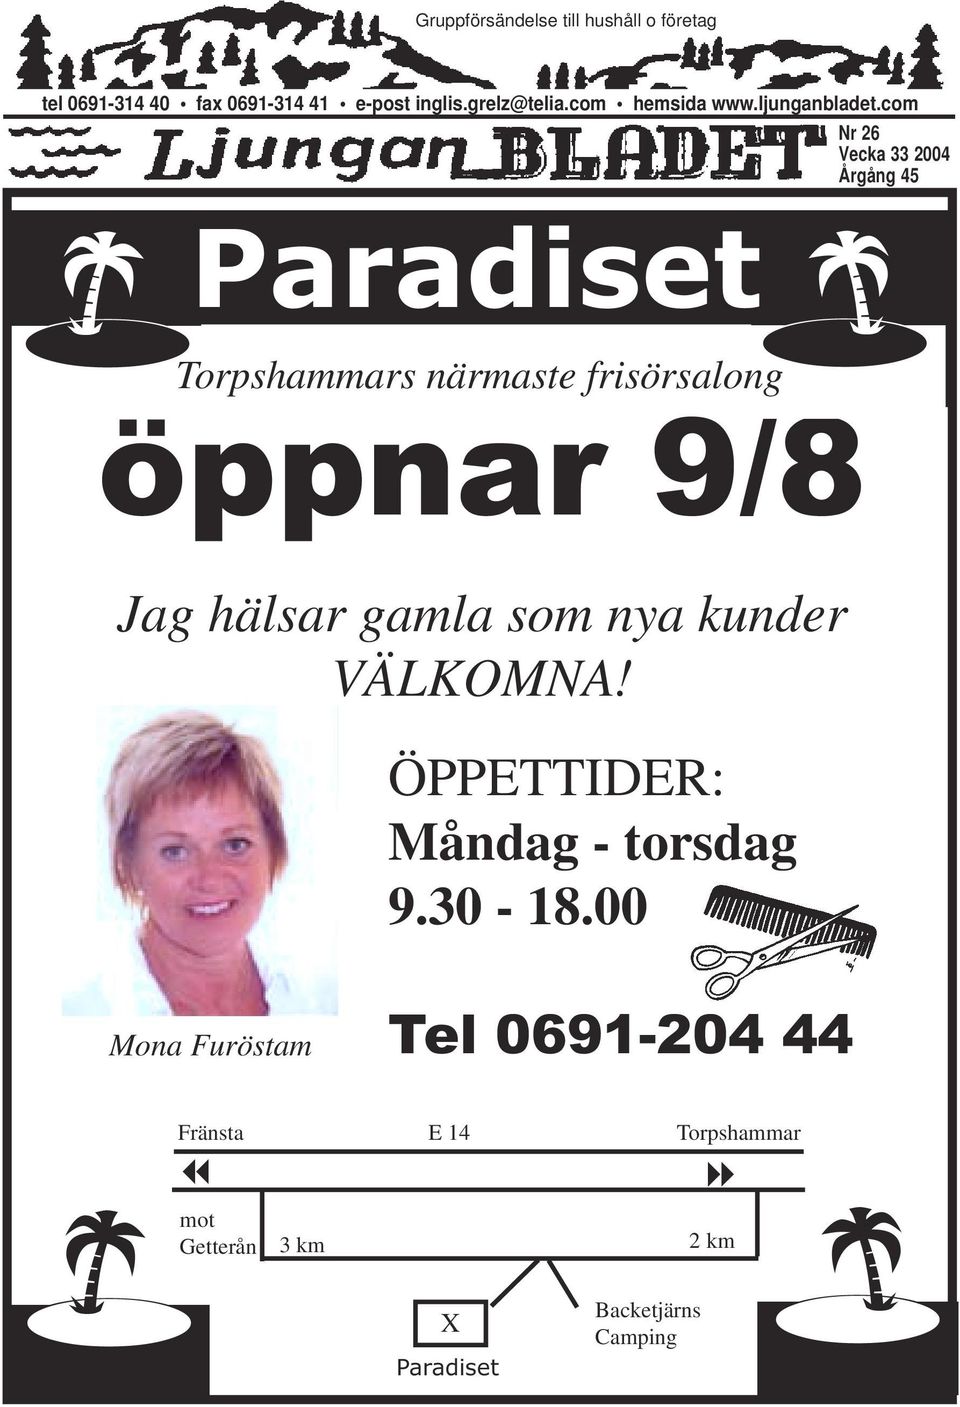 com Nr 26 Vecka 33 2004 Årgång 45 Paradiset Torpshammars närmaste frisörsalong öppnar 9/8 Jag hälsar